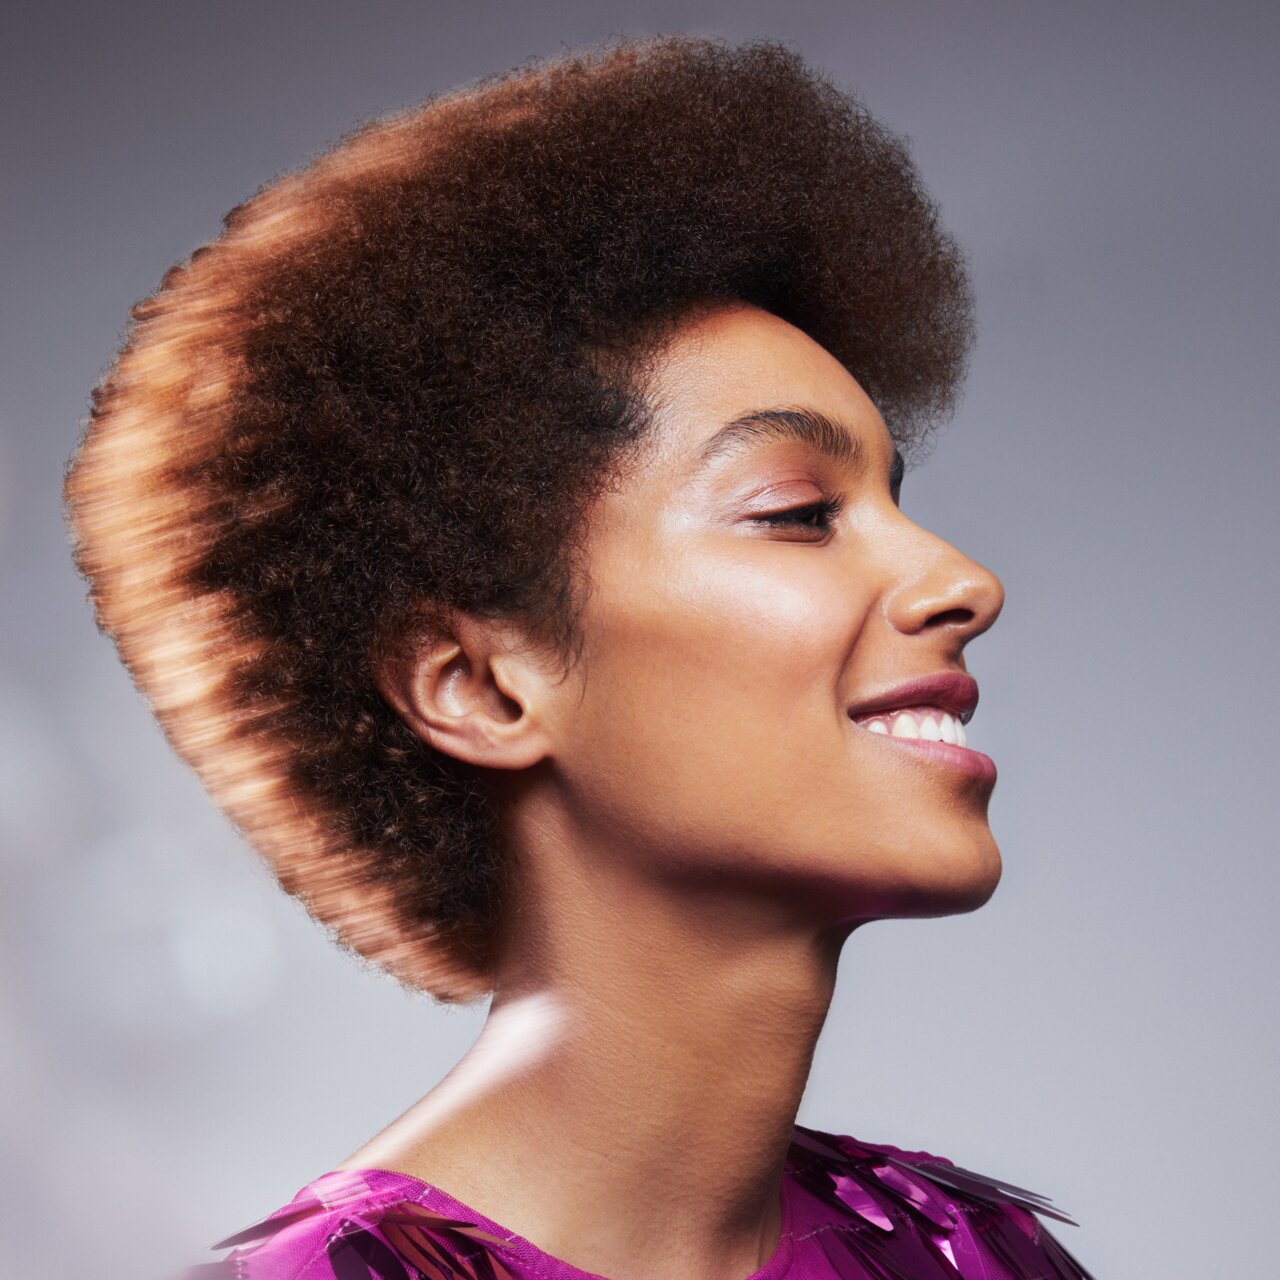 Porträt einer schönen jungen Frau mit mittellangem krausem Haar, das zu einer Afro Frisur gestylt wurde